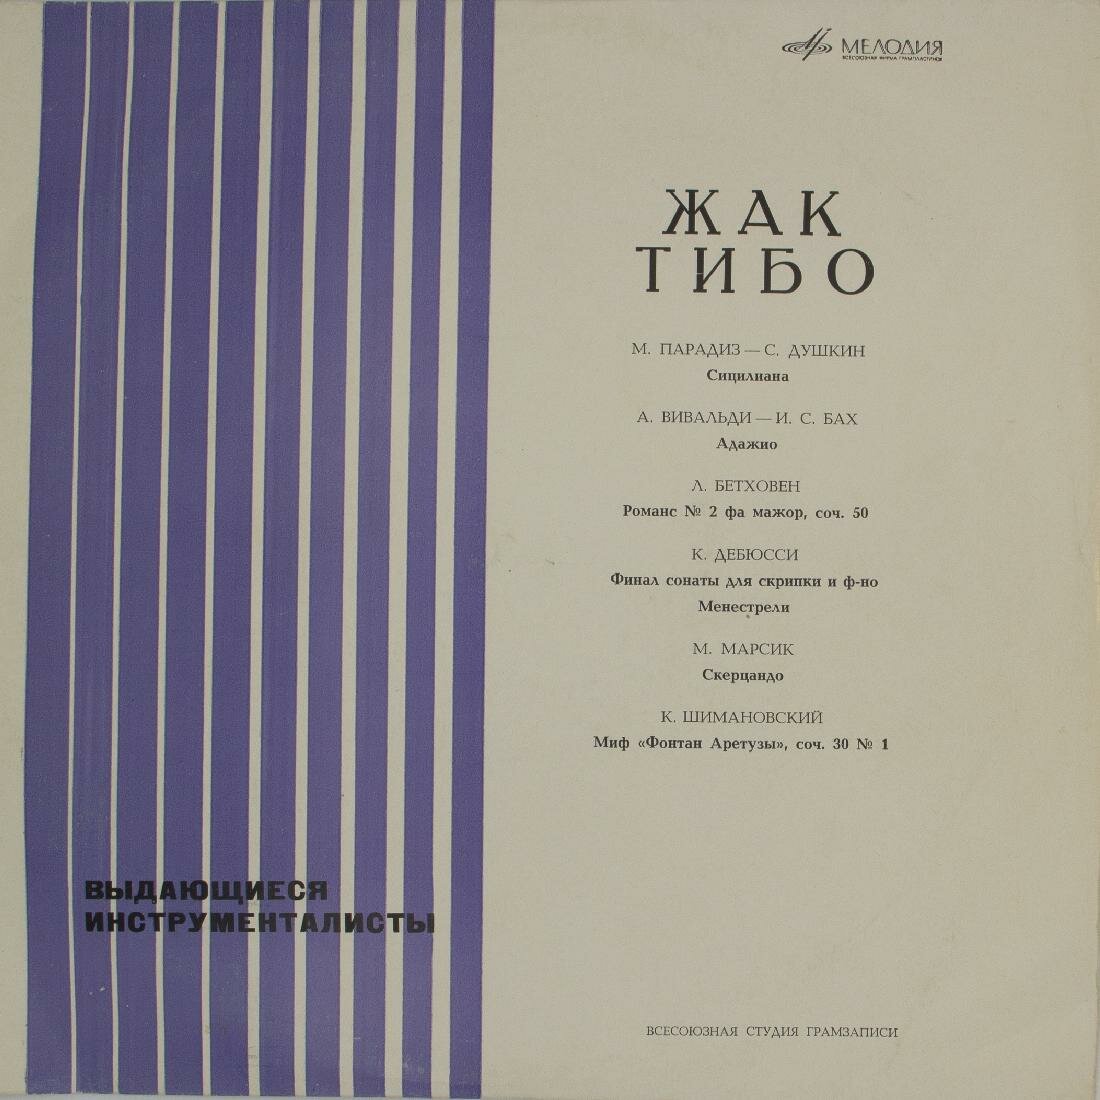 Виниловая пластинка Жак Тибо - Выдающиеся Инструменталисты